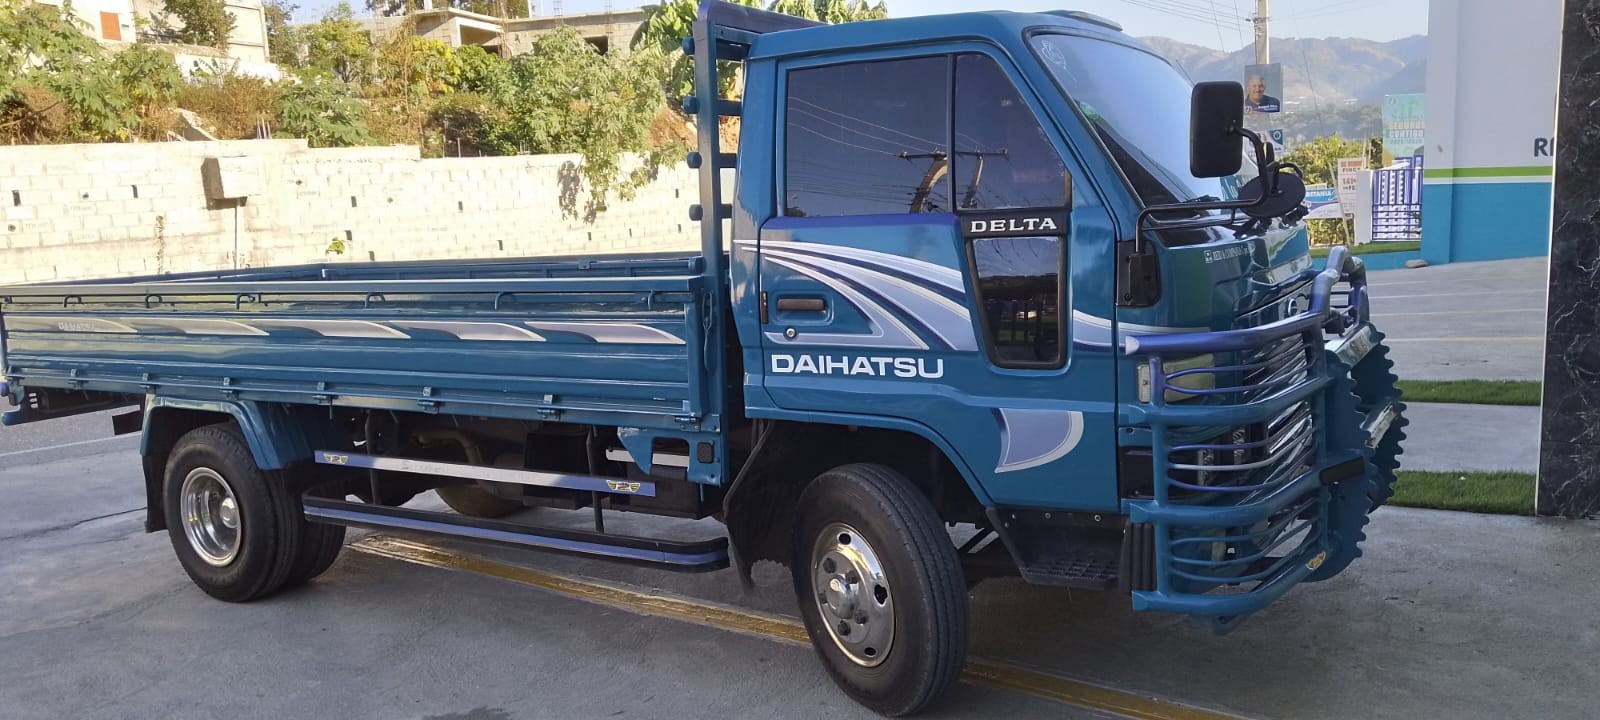 camiones y vehiculos pesados - Daihatsu Delta 2003 Cama Larga Cara Ancha 0